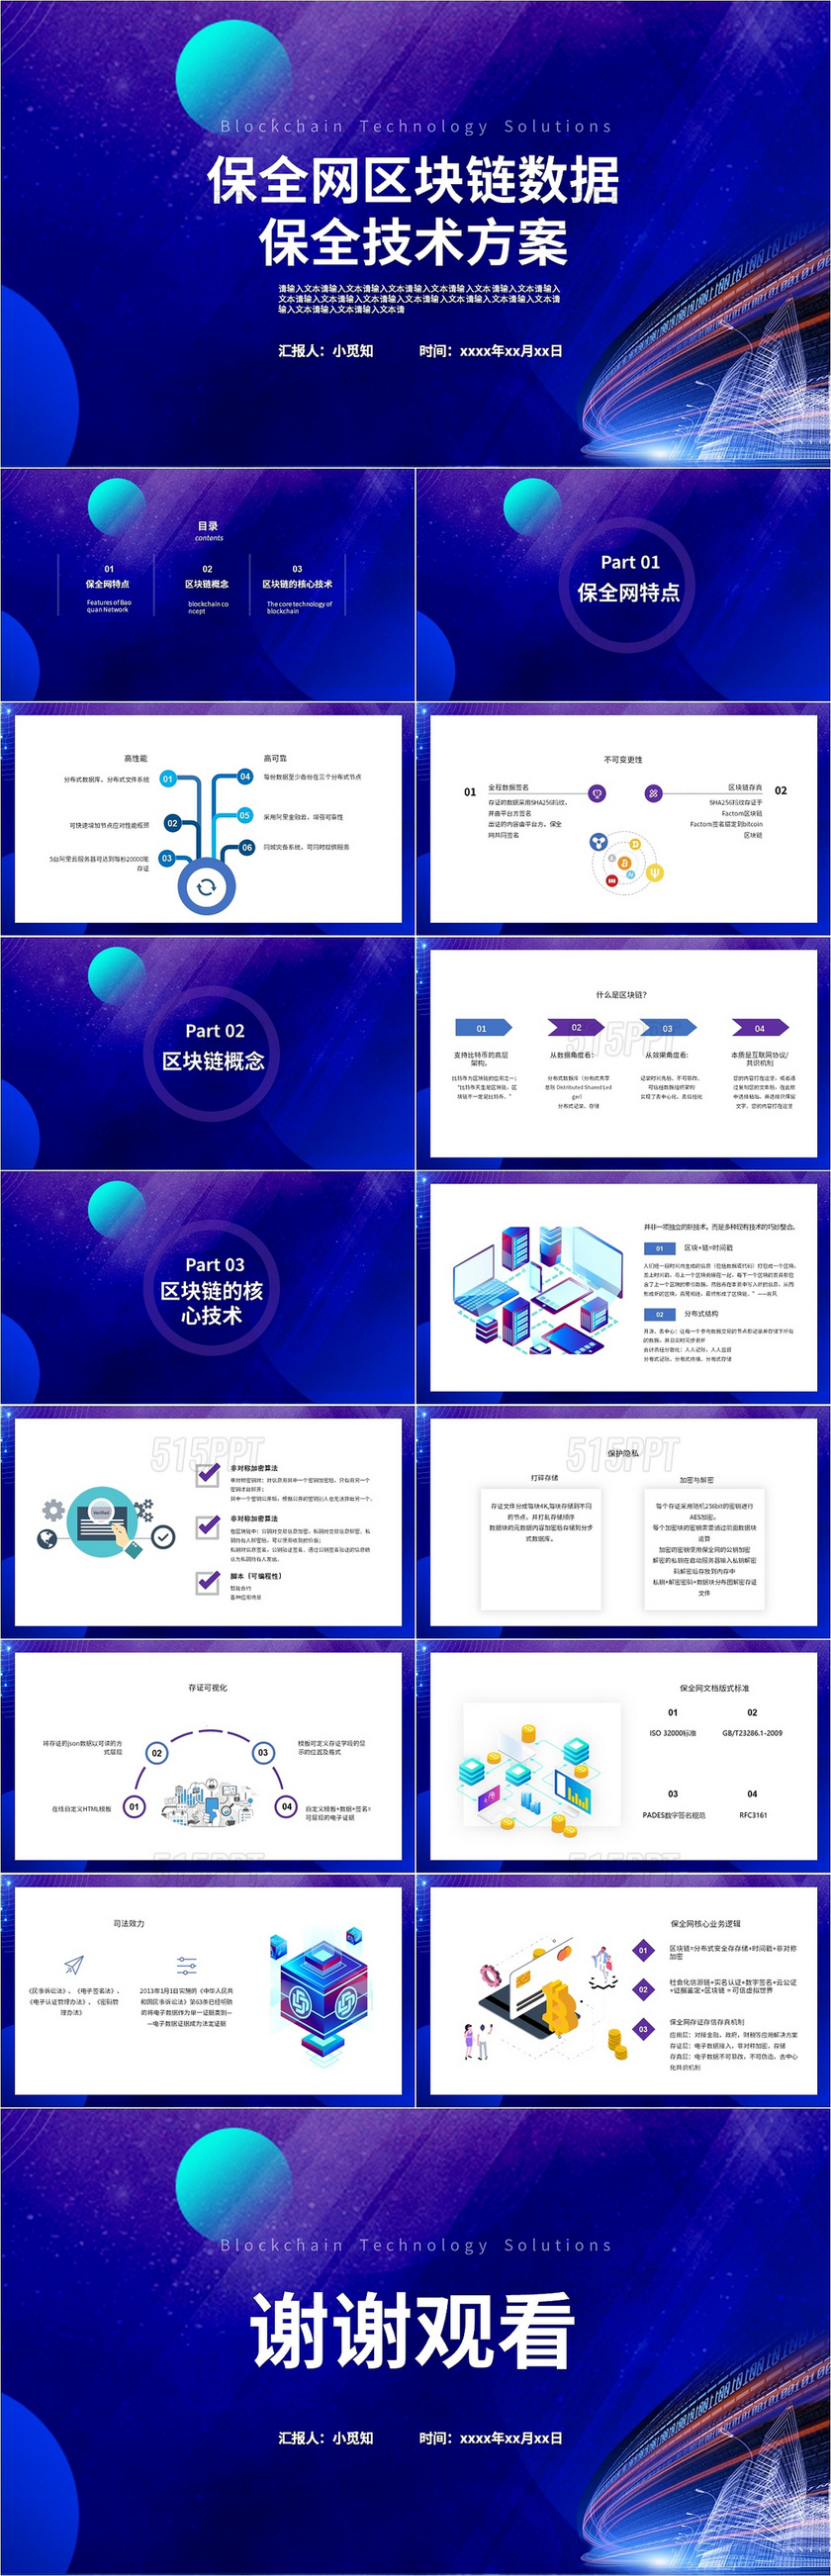 紫色蓝色保全网区块链数据保全技术方案PPT模板